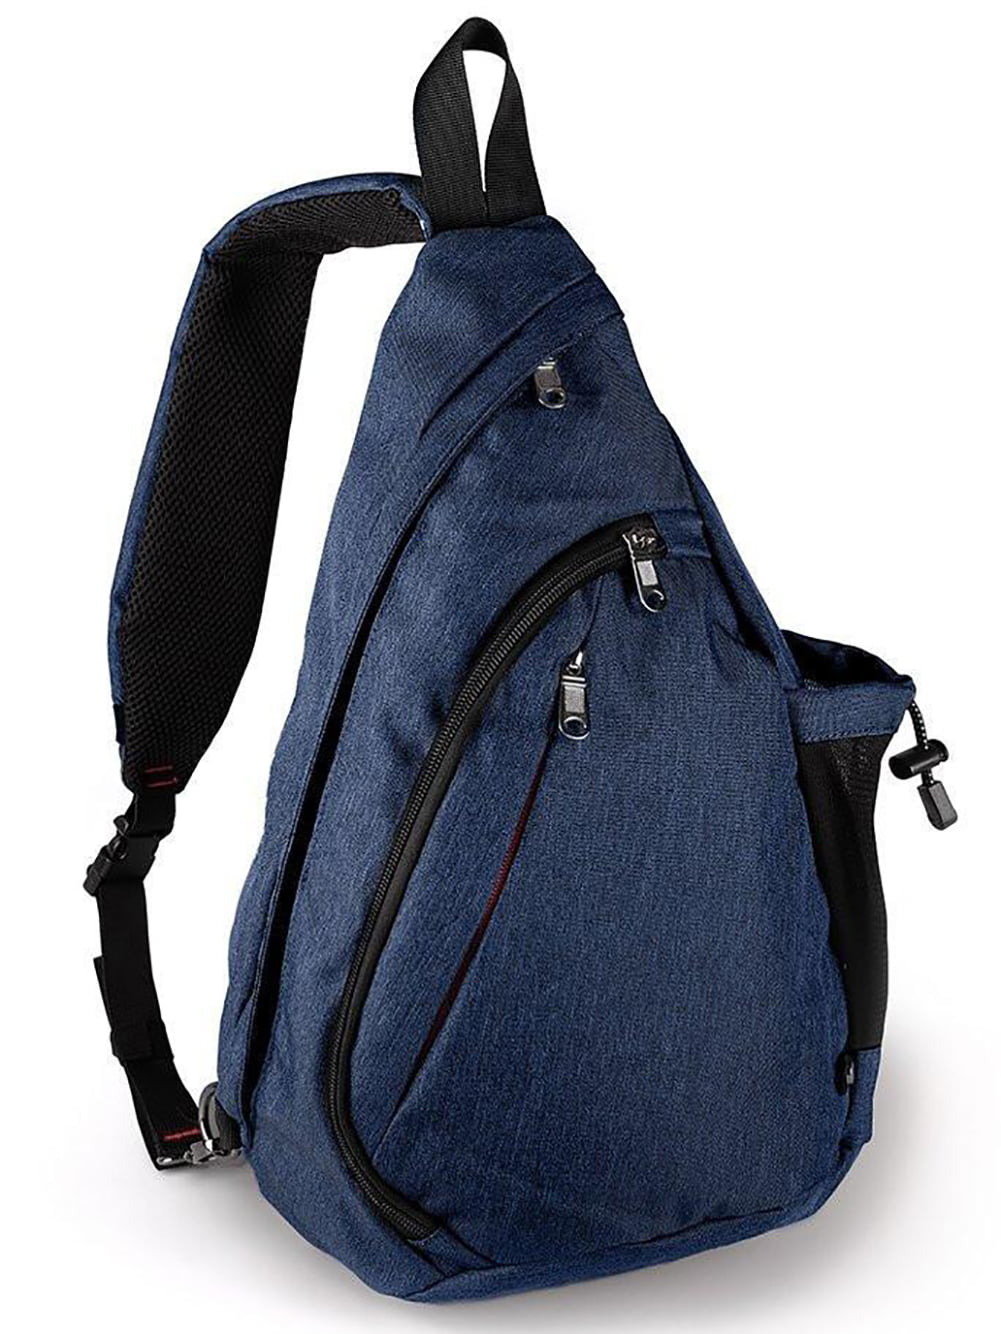 Mens sling backpack